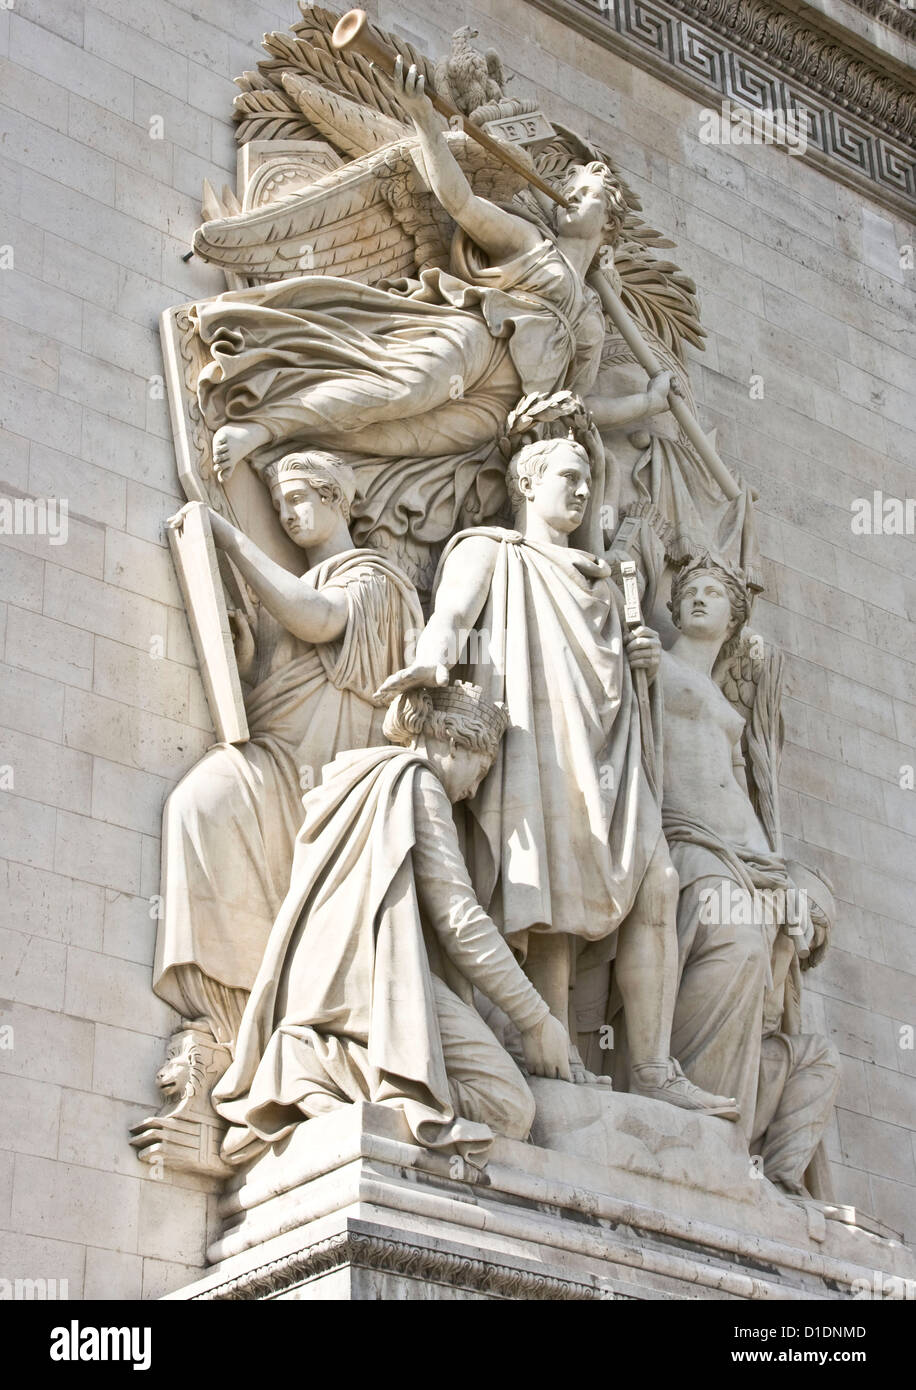 'Le Triomphe de 1810' a sculpture group by Jean-Pierre Cortot Arc de Triomphe Paris France Europe Stock Photo